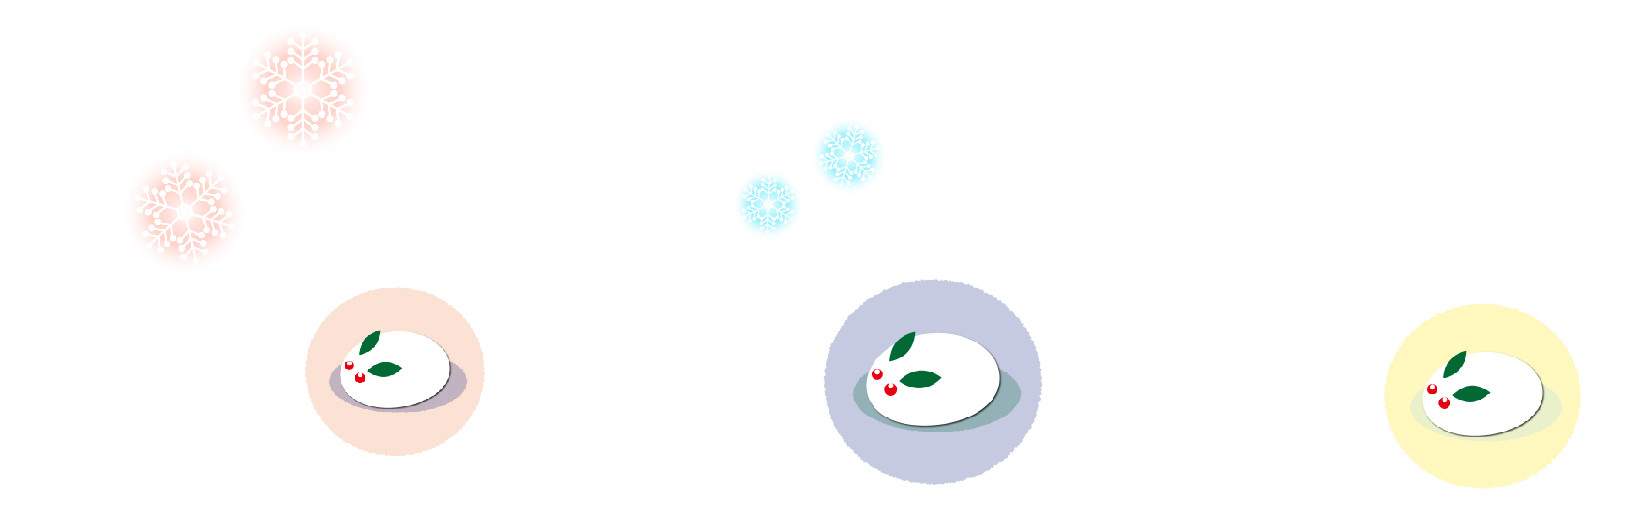 冬の挨拶に使える雪うさぎのイラスト 日日oekaki